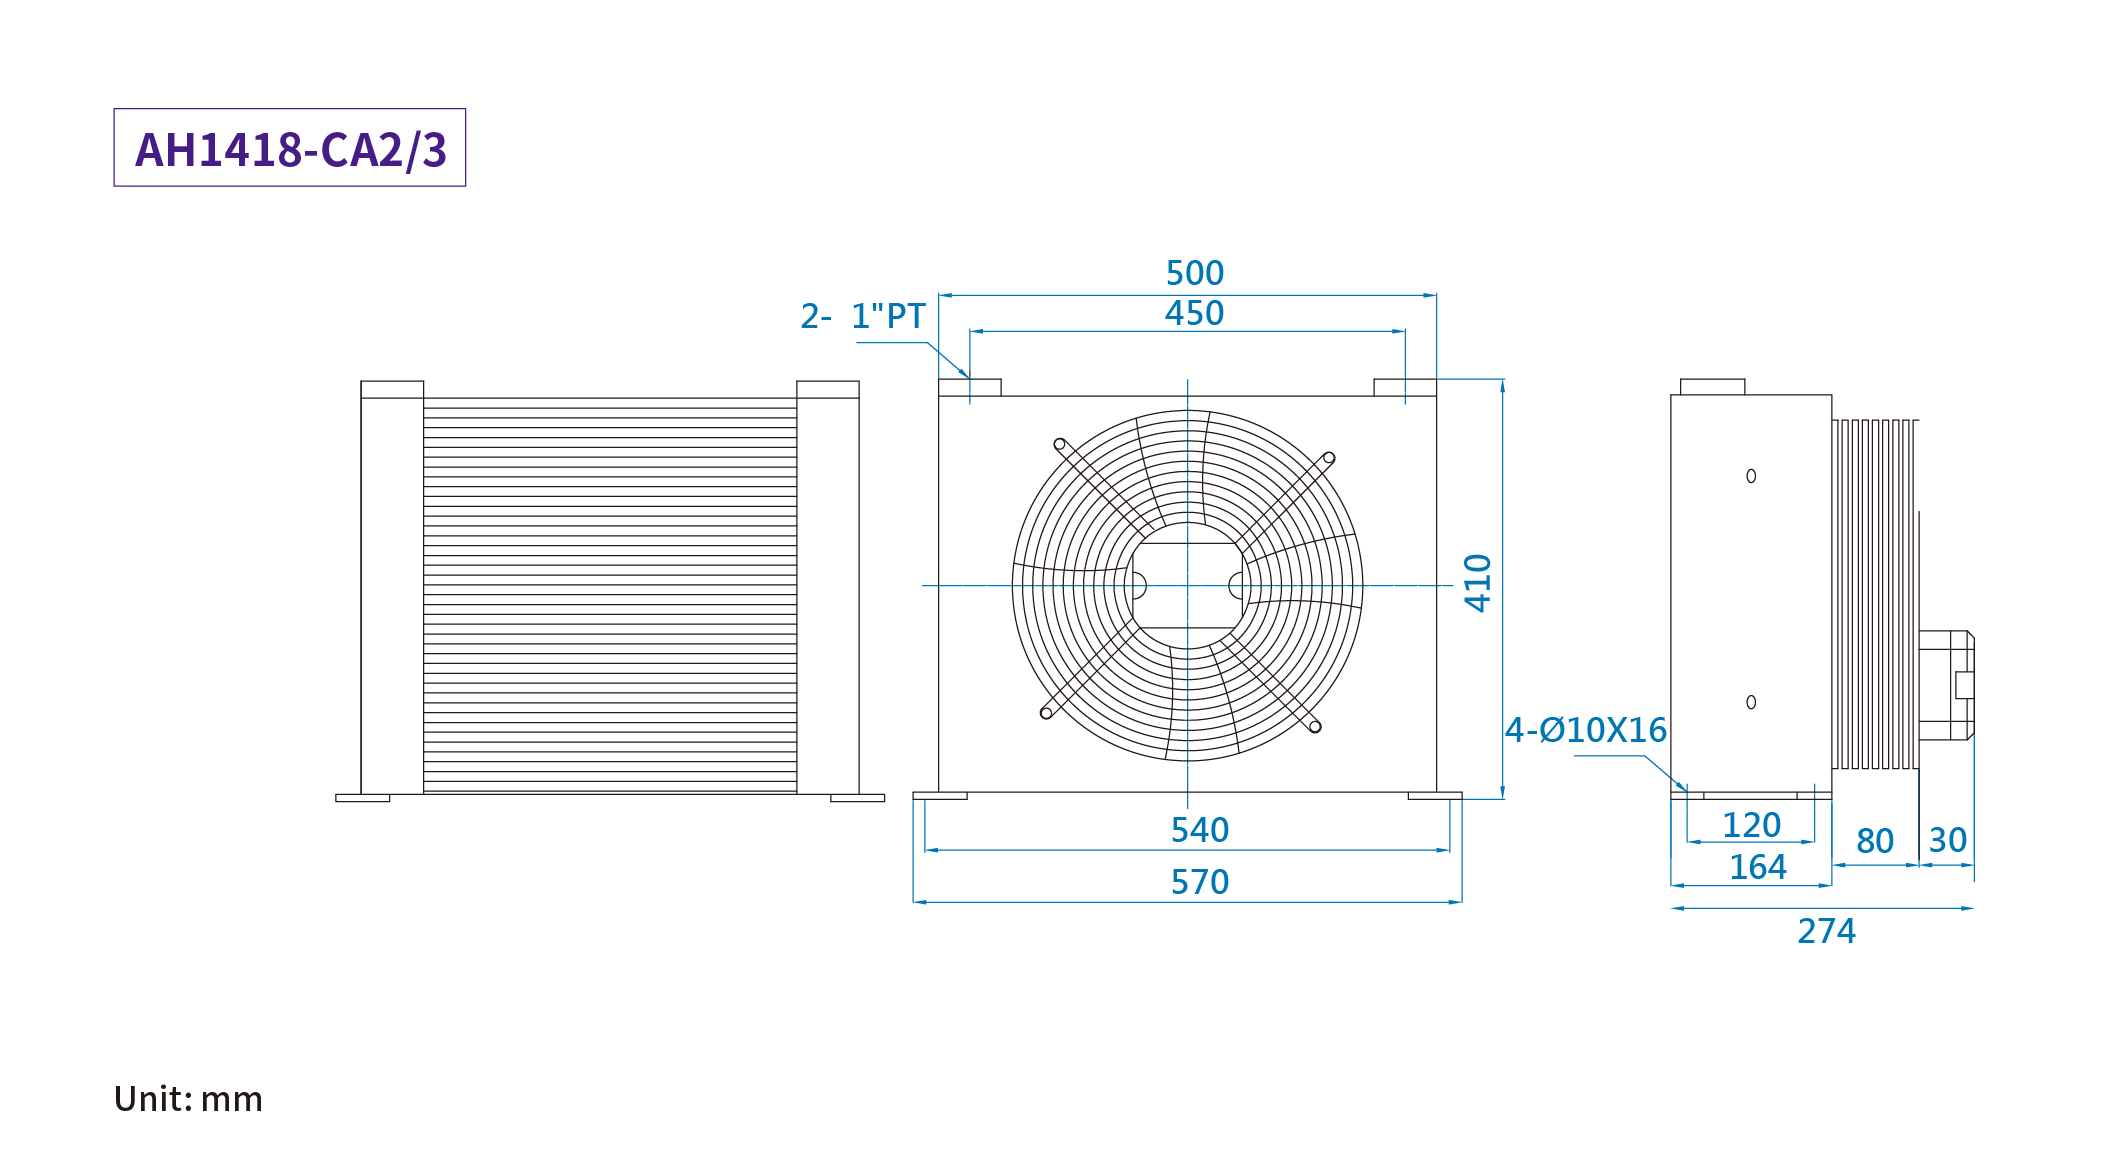 CMLMedium &amp; summus pressura aer refrigeratus coolers, mensurae, dimensio AH1215-CA2